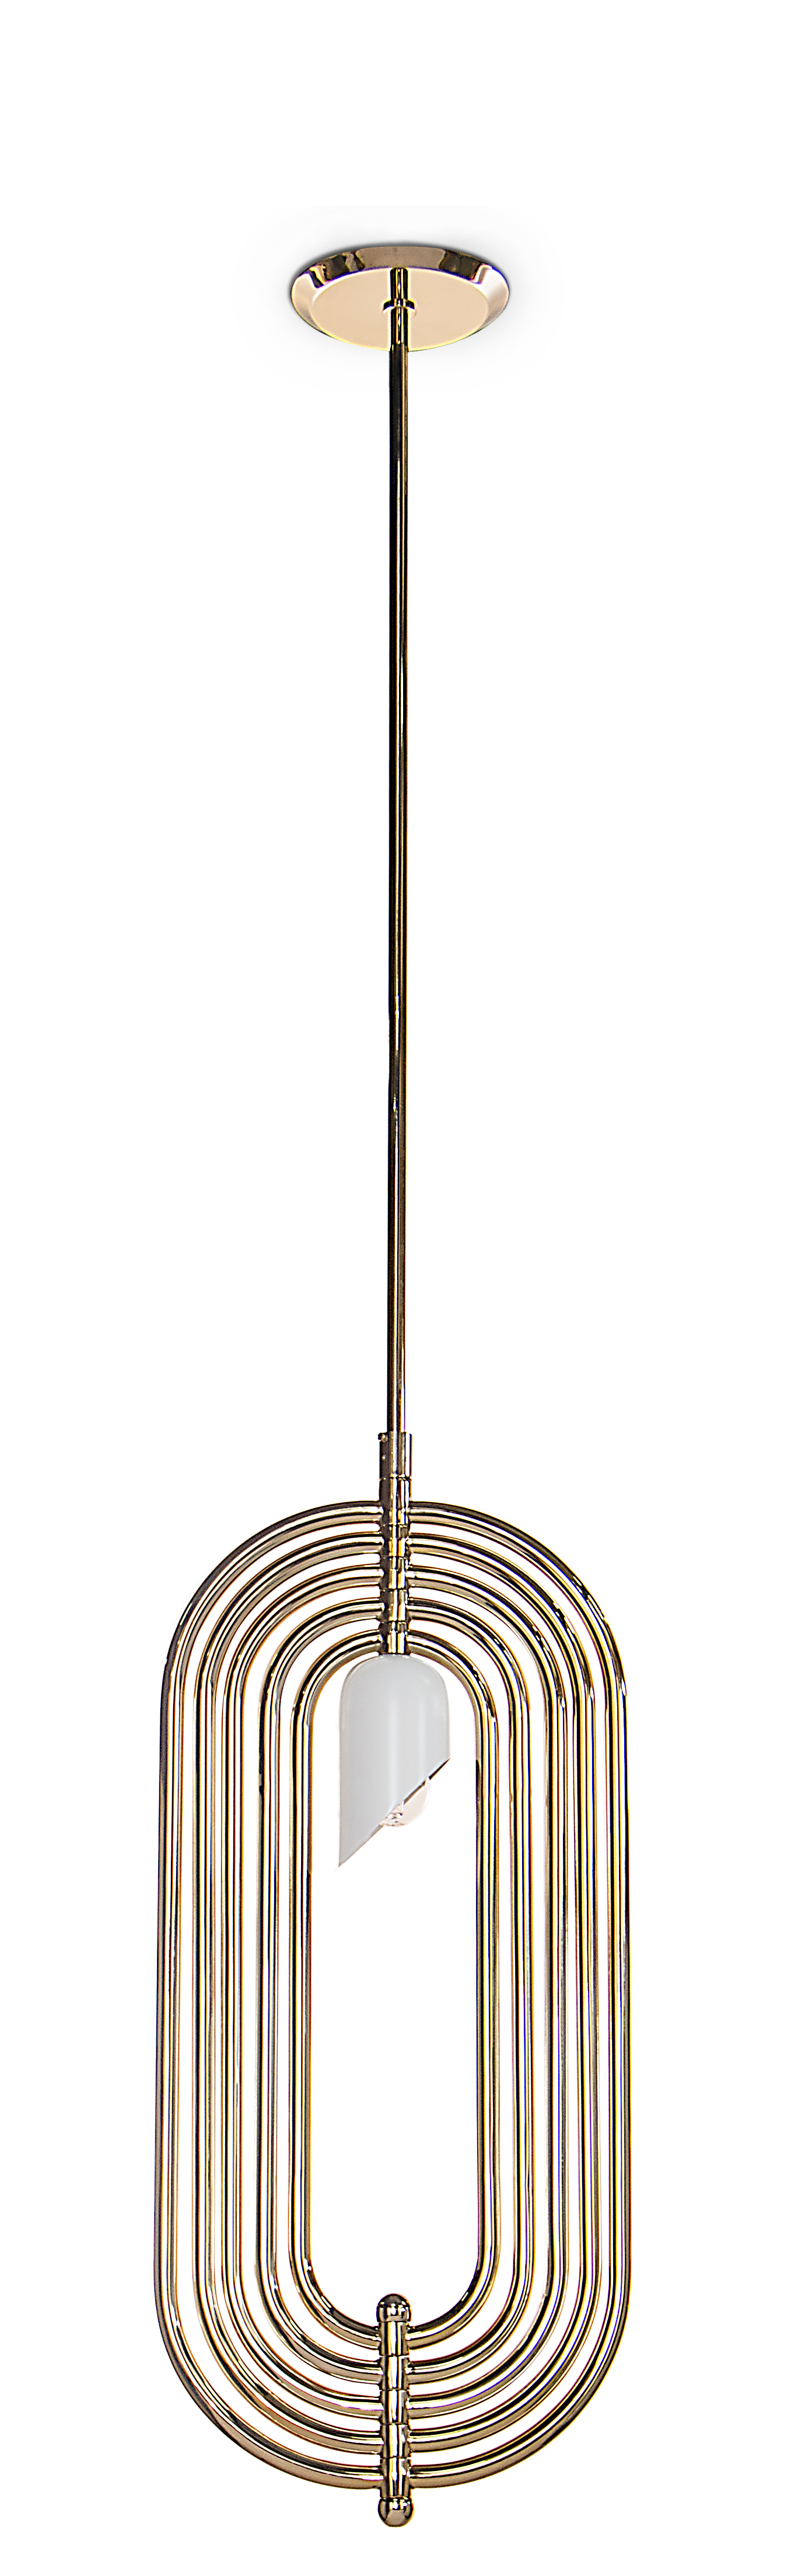 Turner Pendant Lamp by DelightFULL